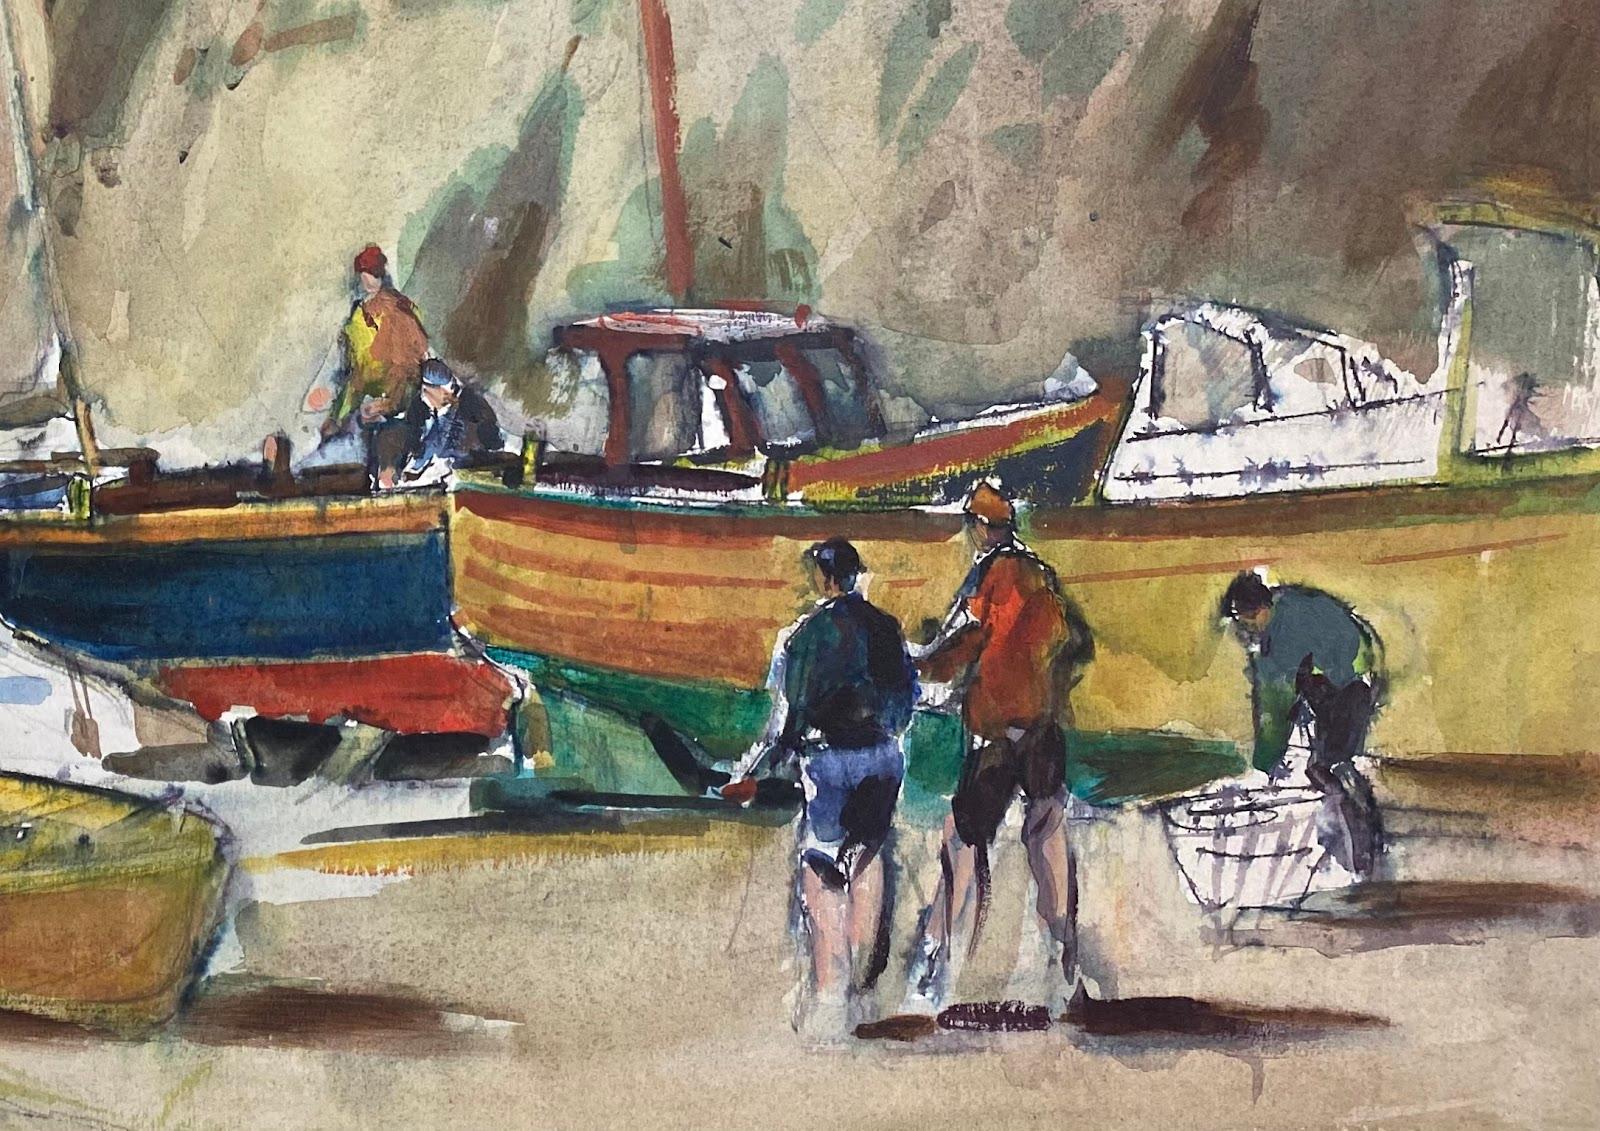 Britisches impressionistisches Gemälde von Fischern und Booten am Strand – Art von Frank Duffield